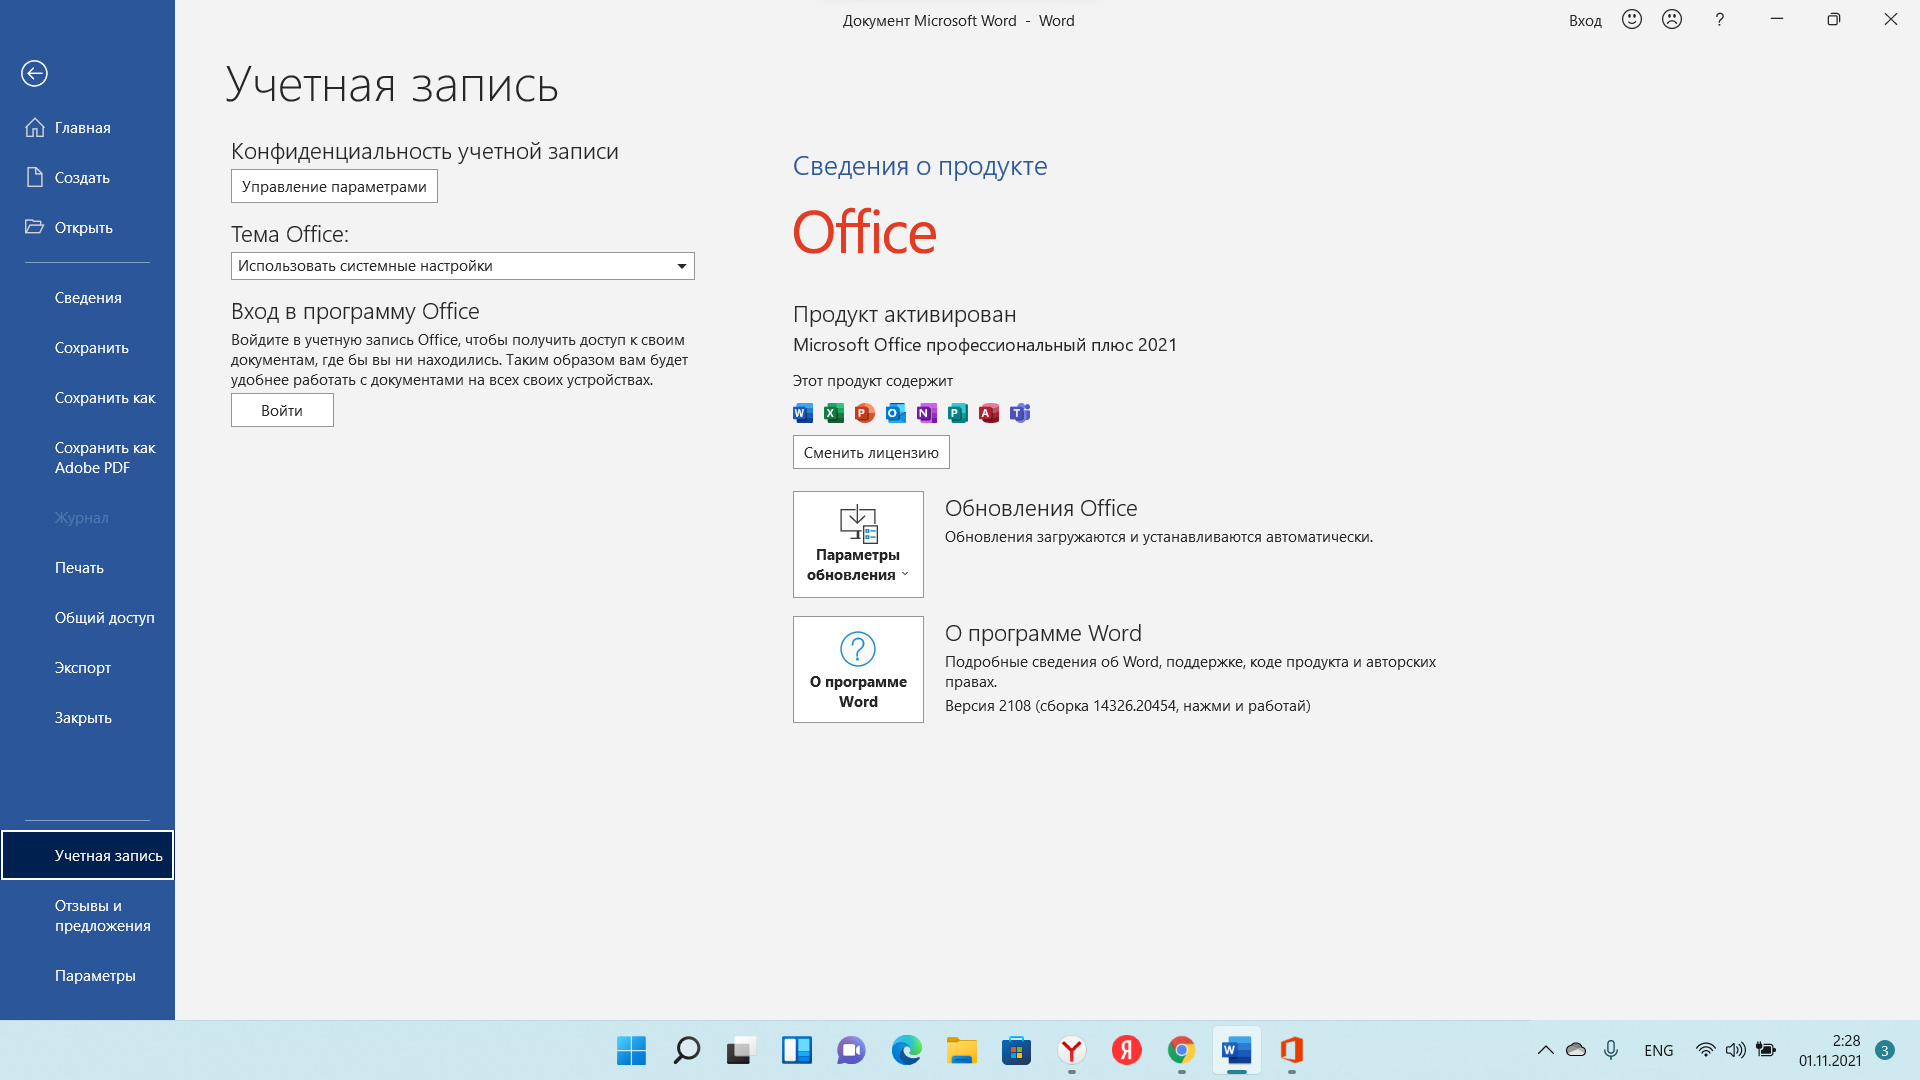 Microsoft office 2016 by kpojiuk. Office LTSC professional Plus 2021. Microsoft Office 2021 LTSC Pro Plus. Office 2021 LTSC. Office professional Plus 2021 Интерфейс.